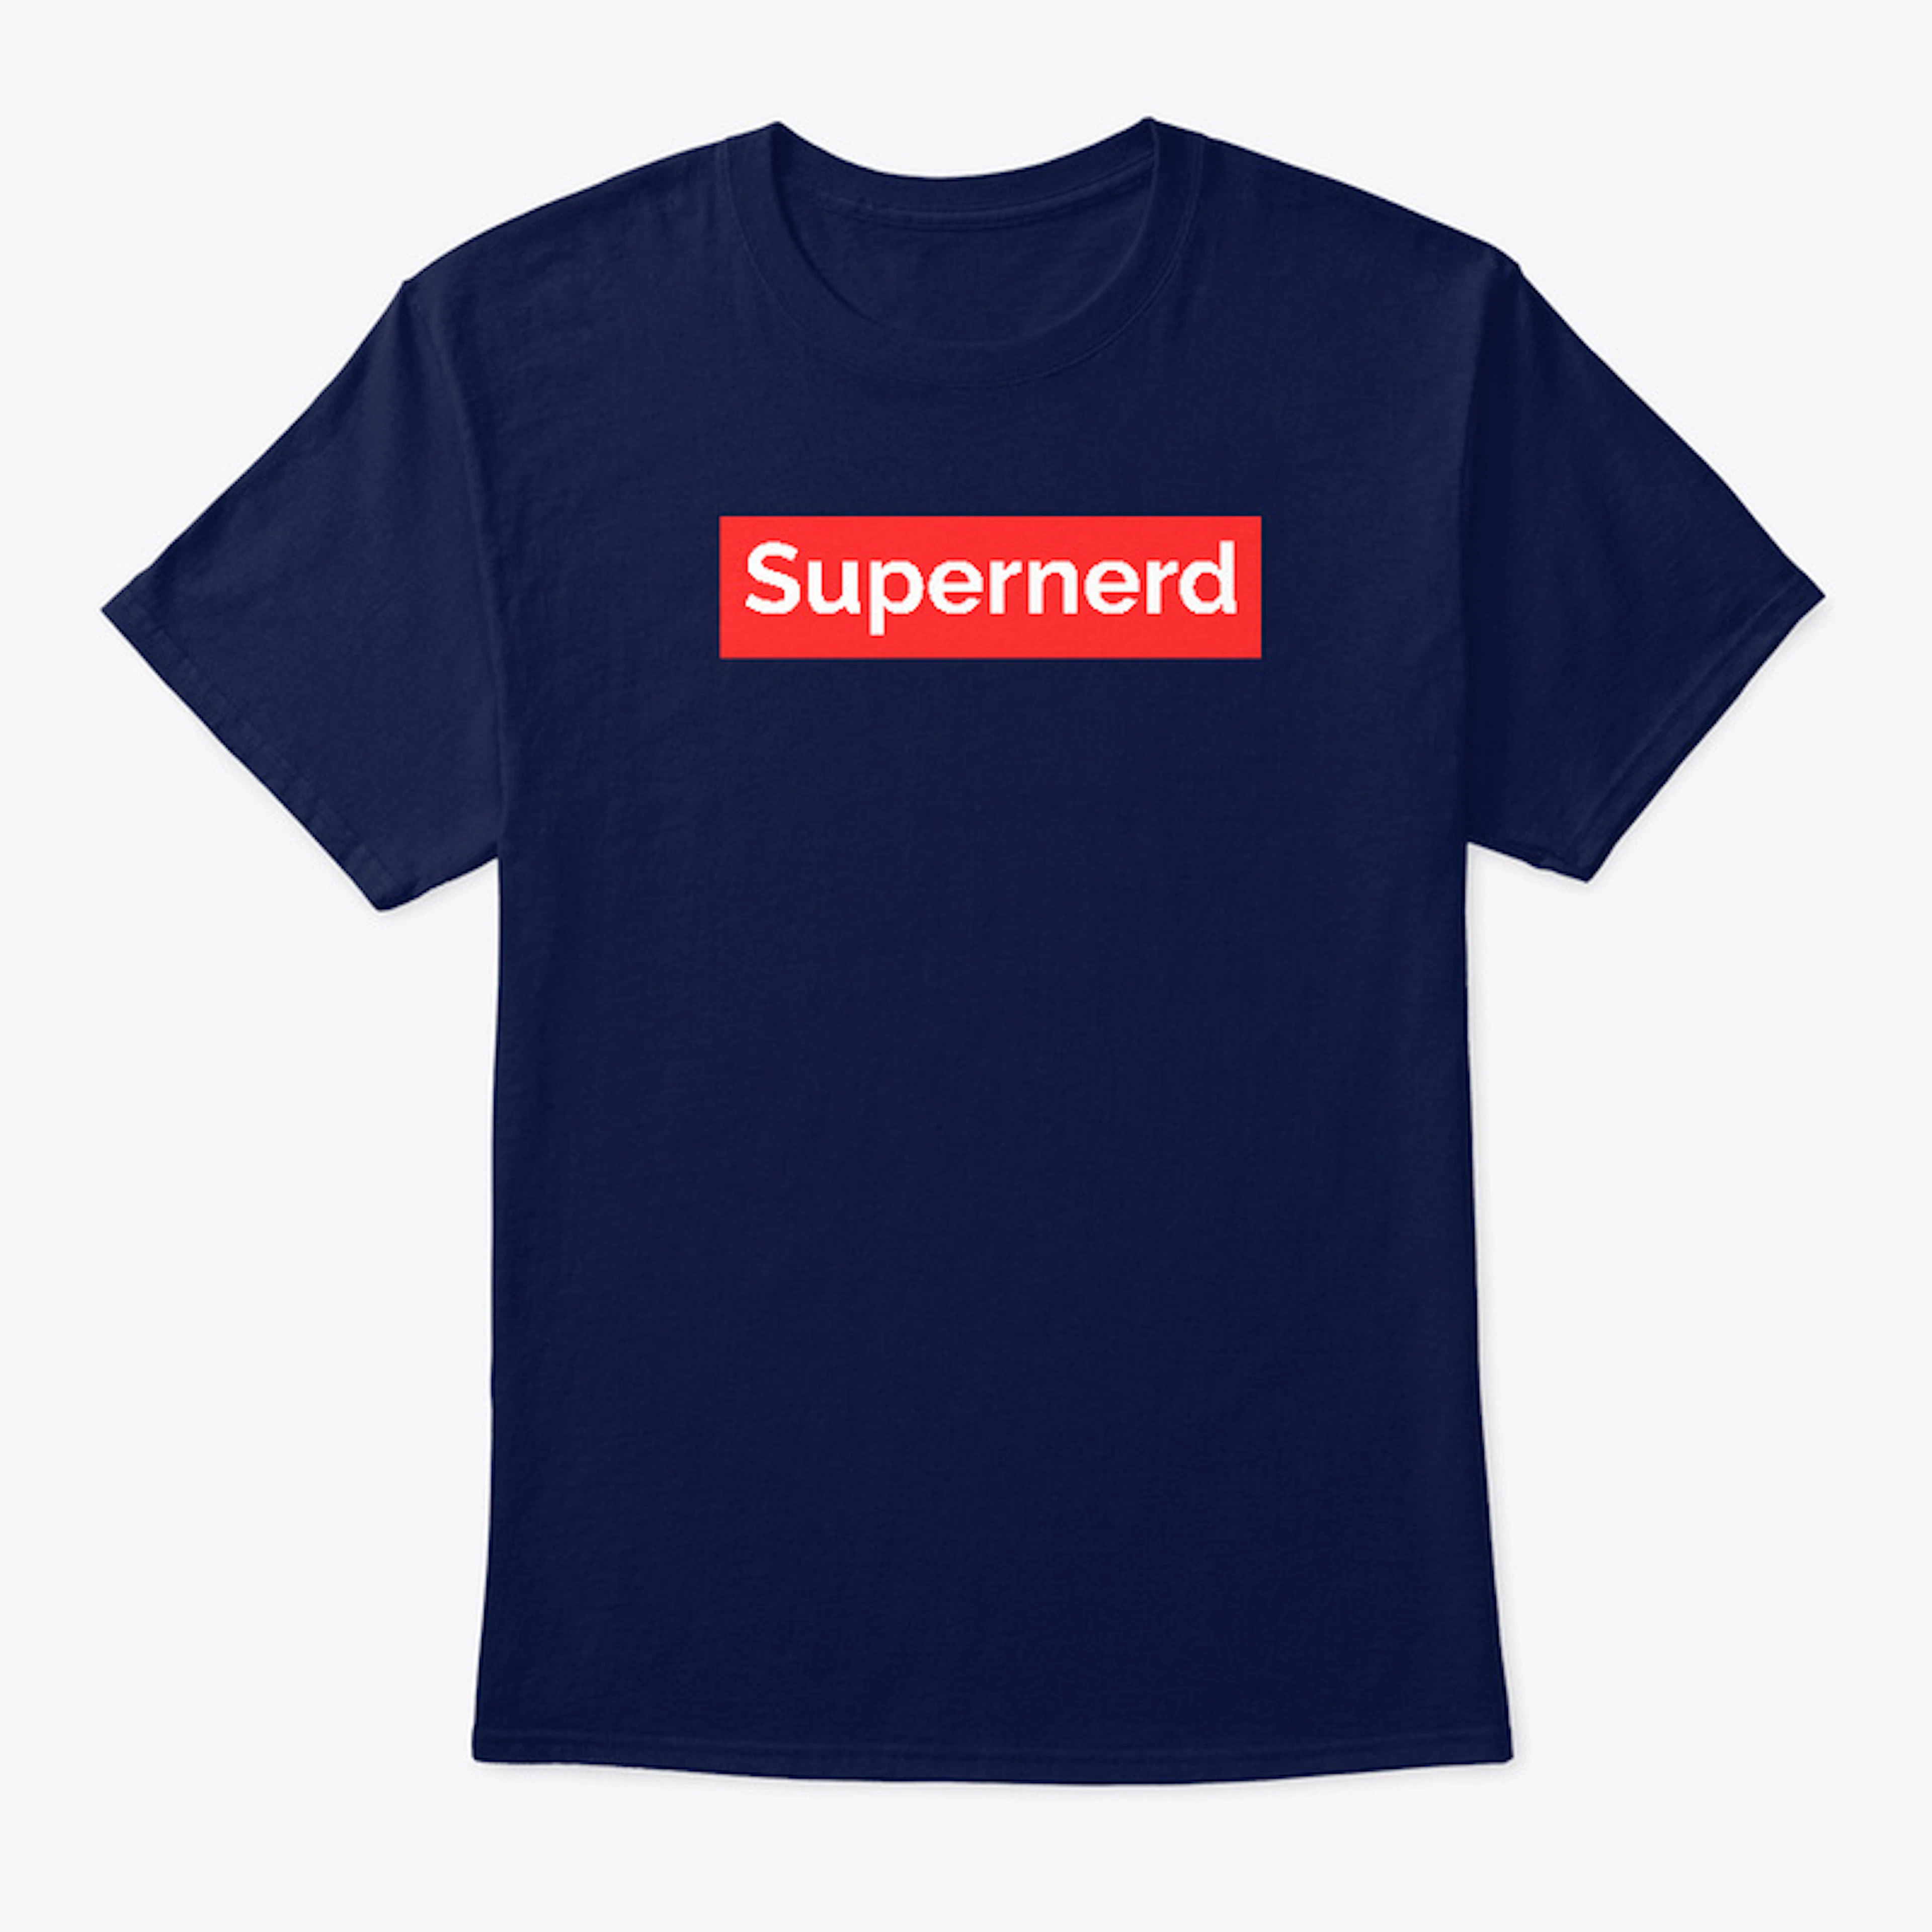 Supernerd - Dark